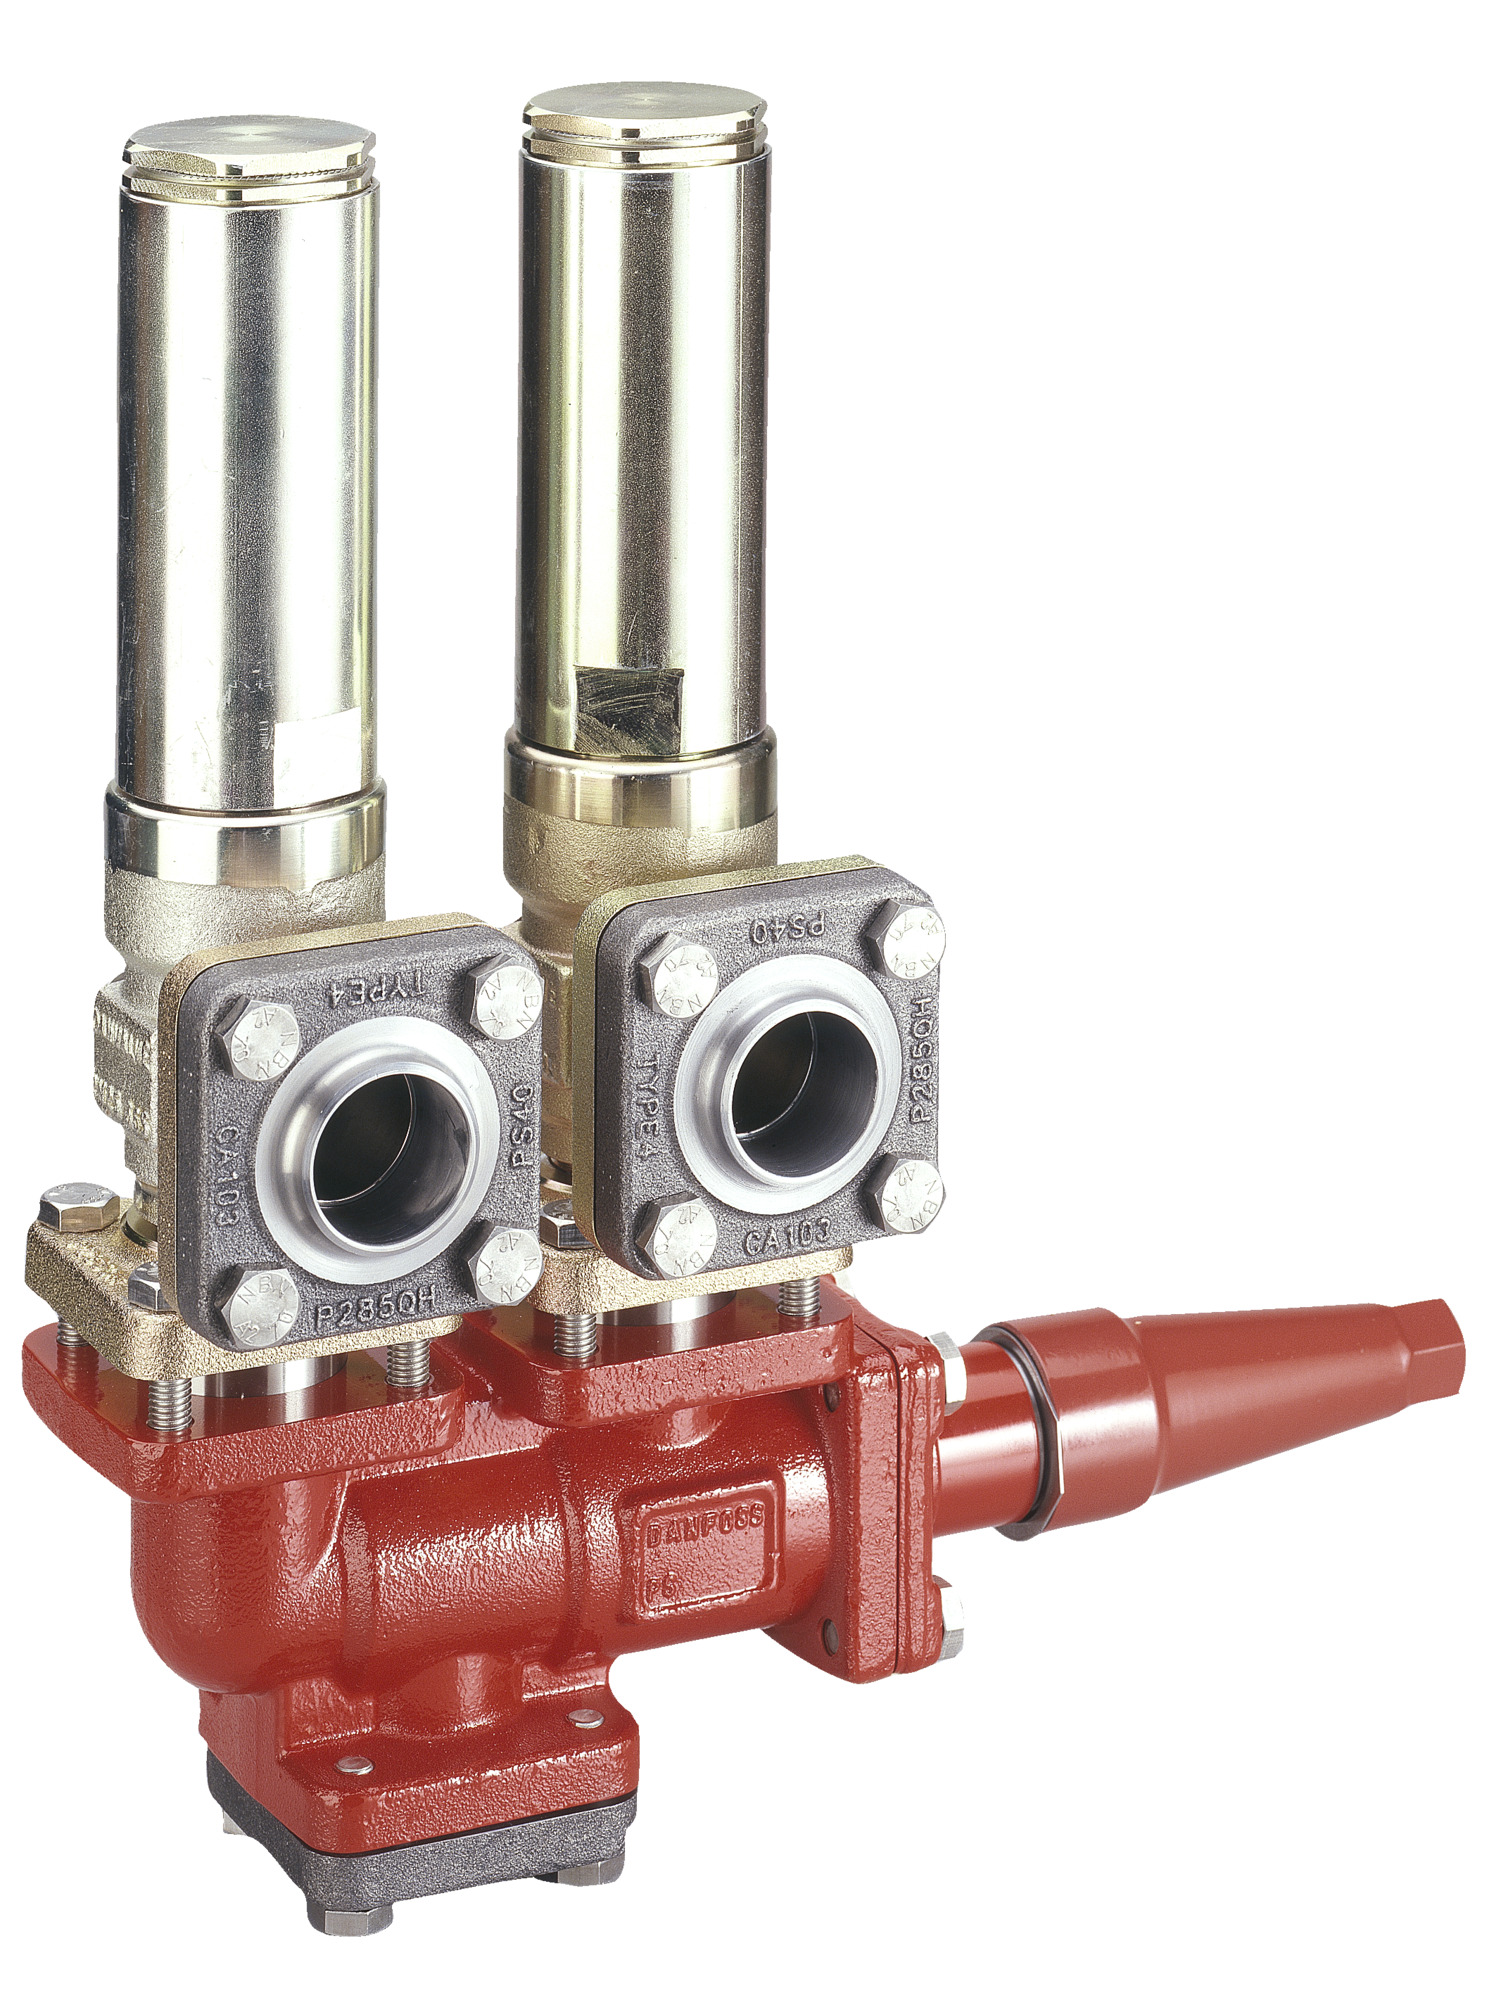 Change-over valve, DSV 2, Weld flange